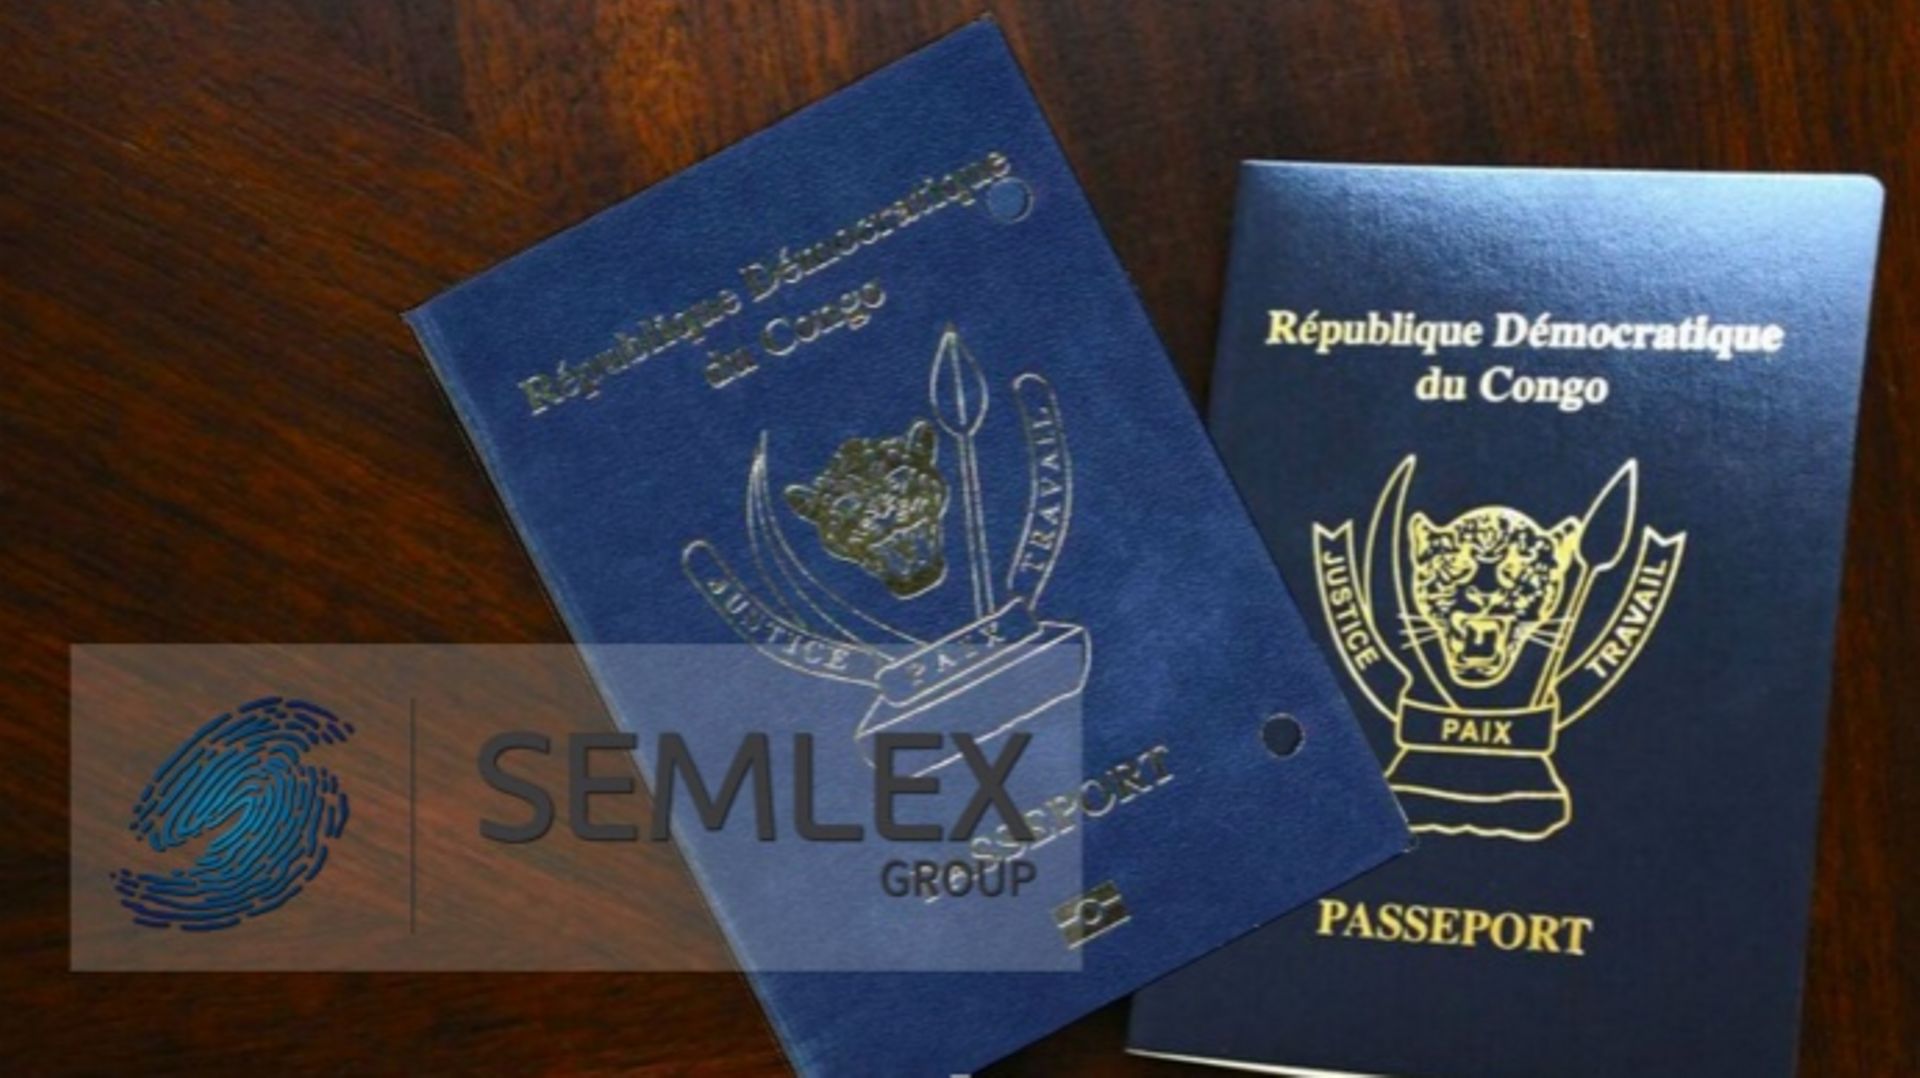 En juin 2015, Semlex avait obtenu en RDC un important contrat de livraisons de passeports biométriques. La justice belge suspecte dans ce cadre le versement de commissions à des officiels congolais. Des soupçons de corruption associés à du blanchiment d'a